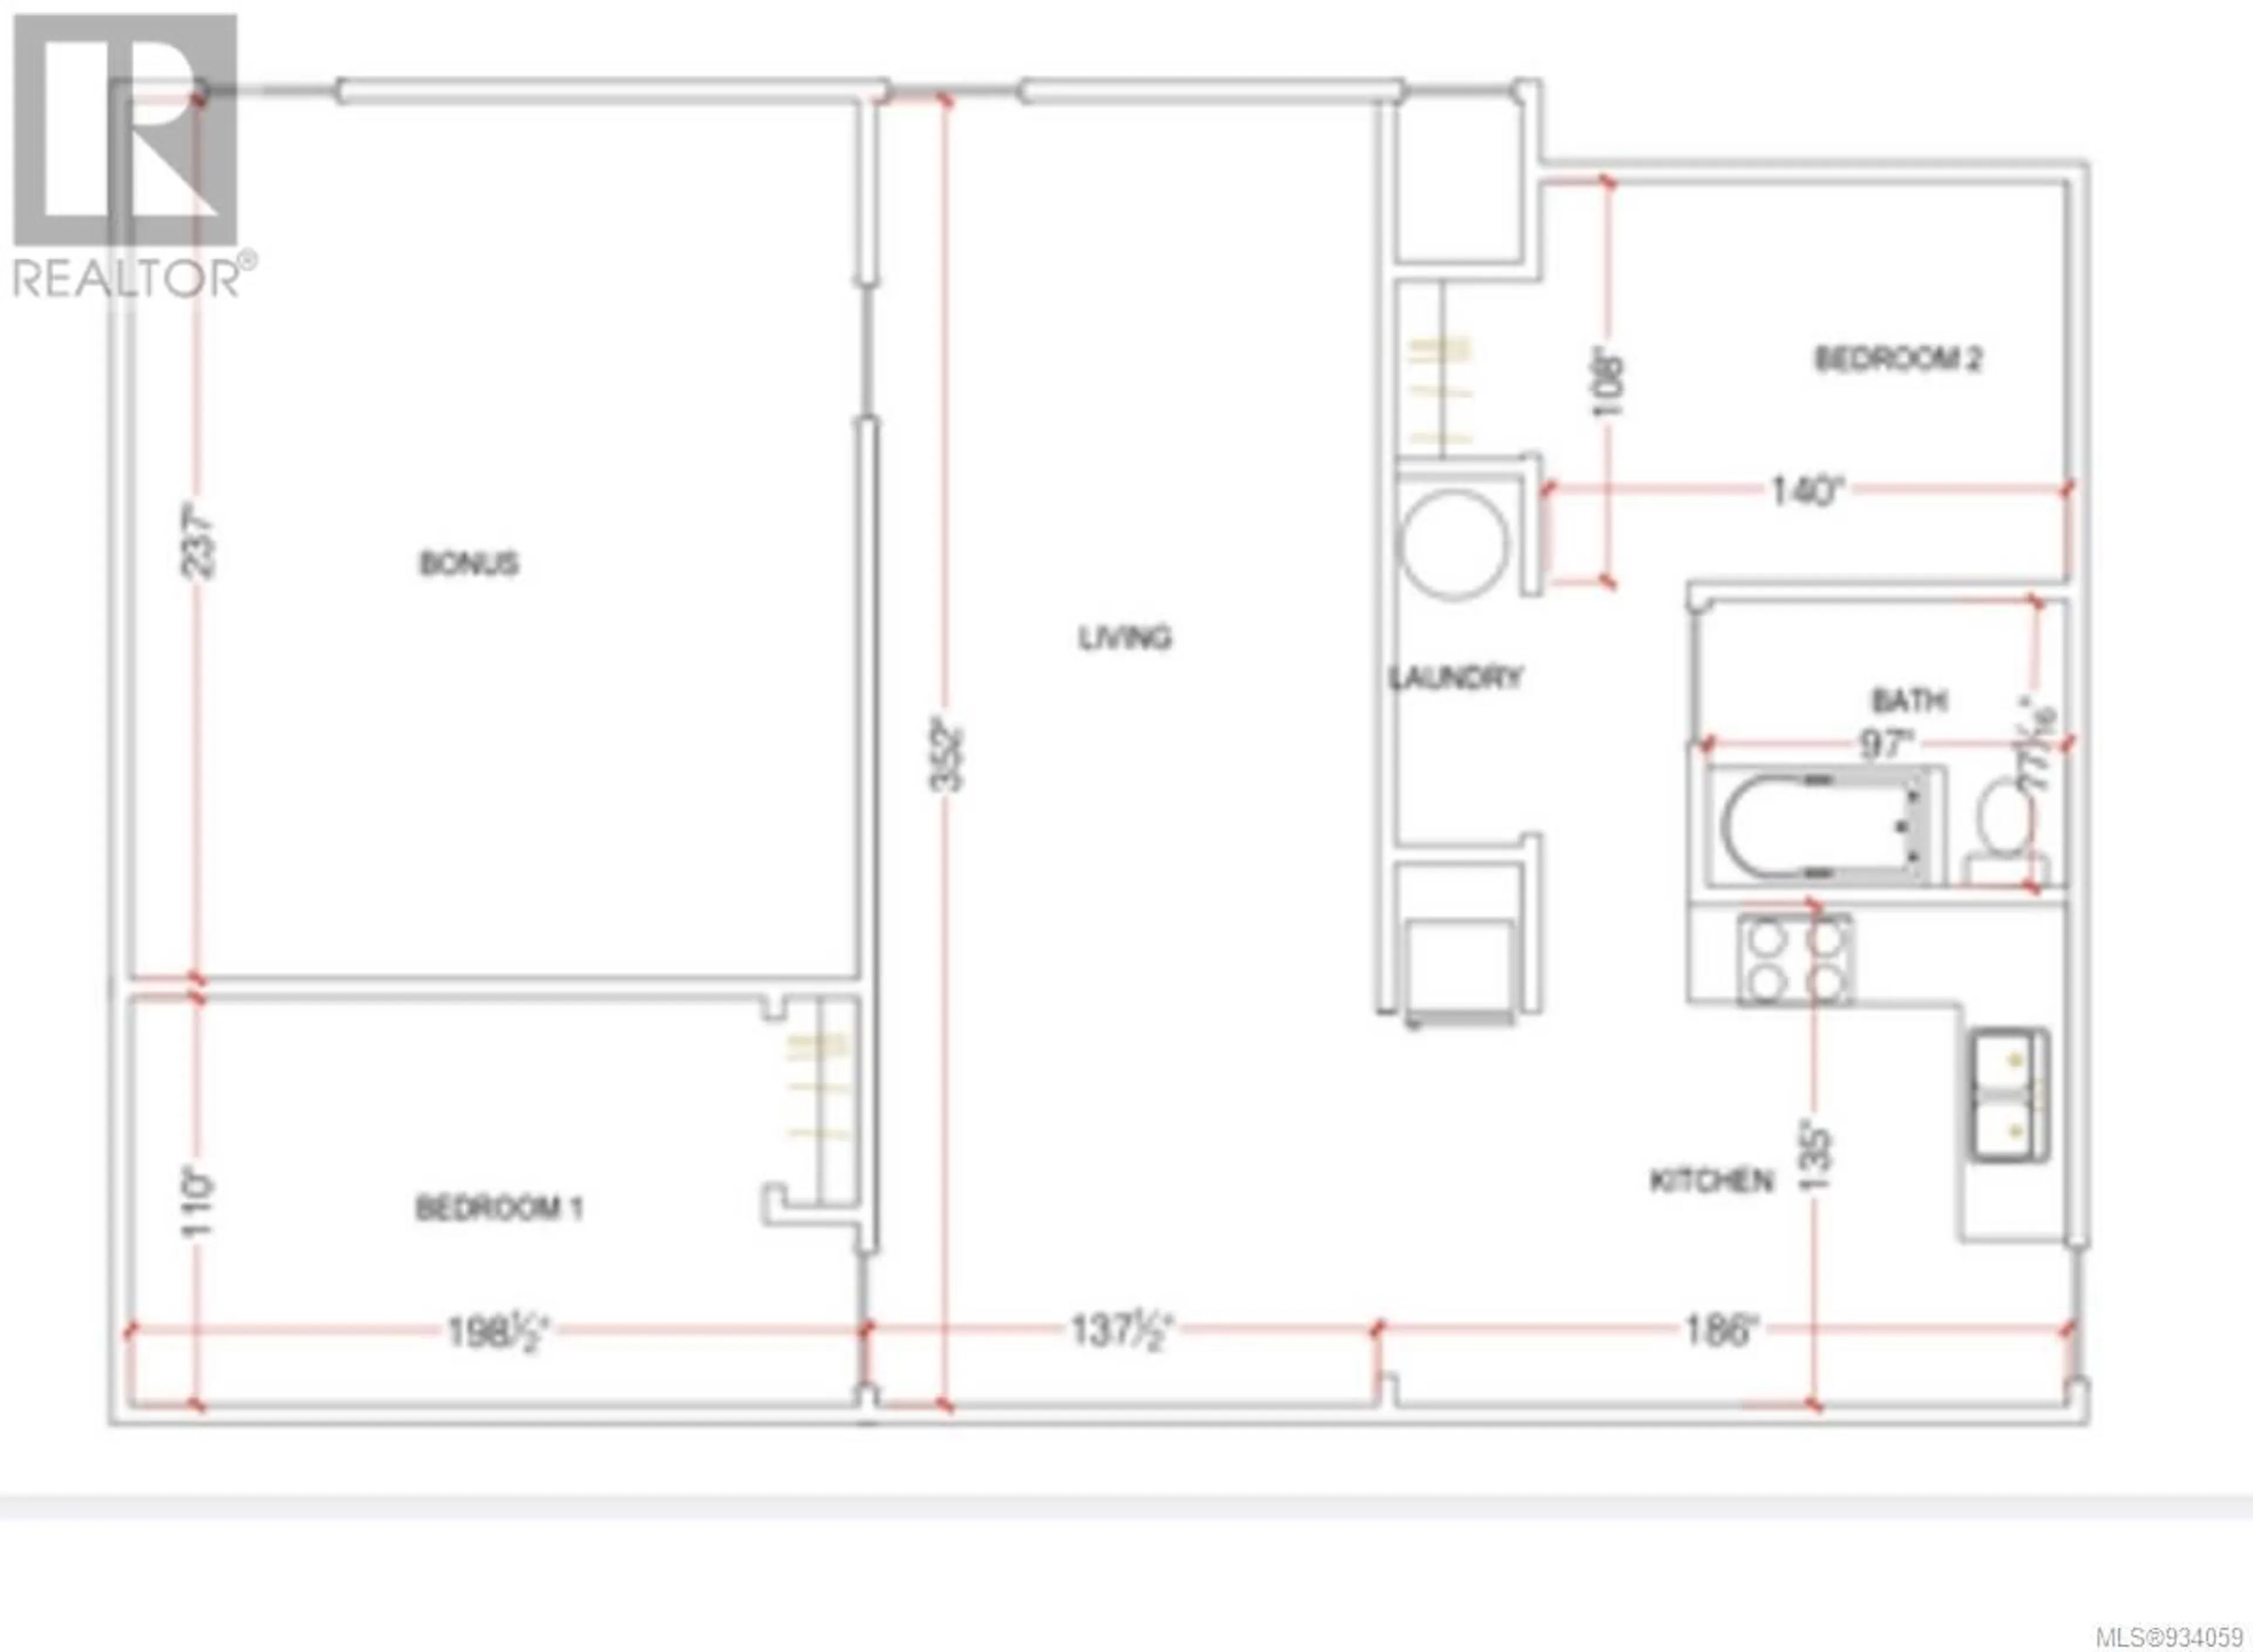 Floor plan for 1586 McKibbon Rd N, Errington British Columbia V0R1V0